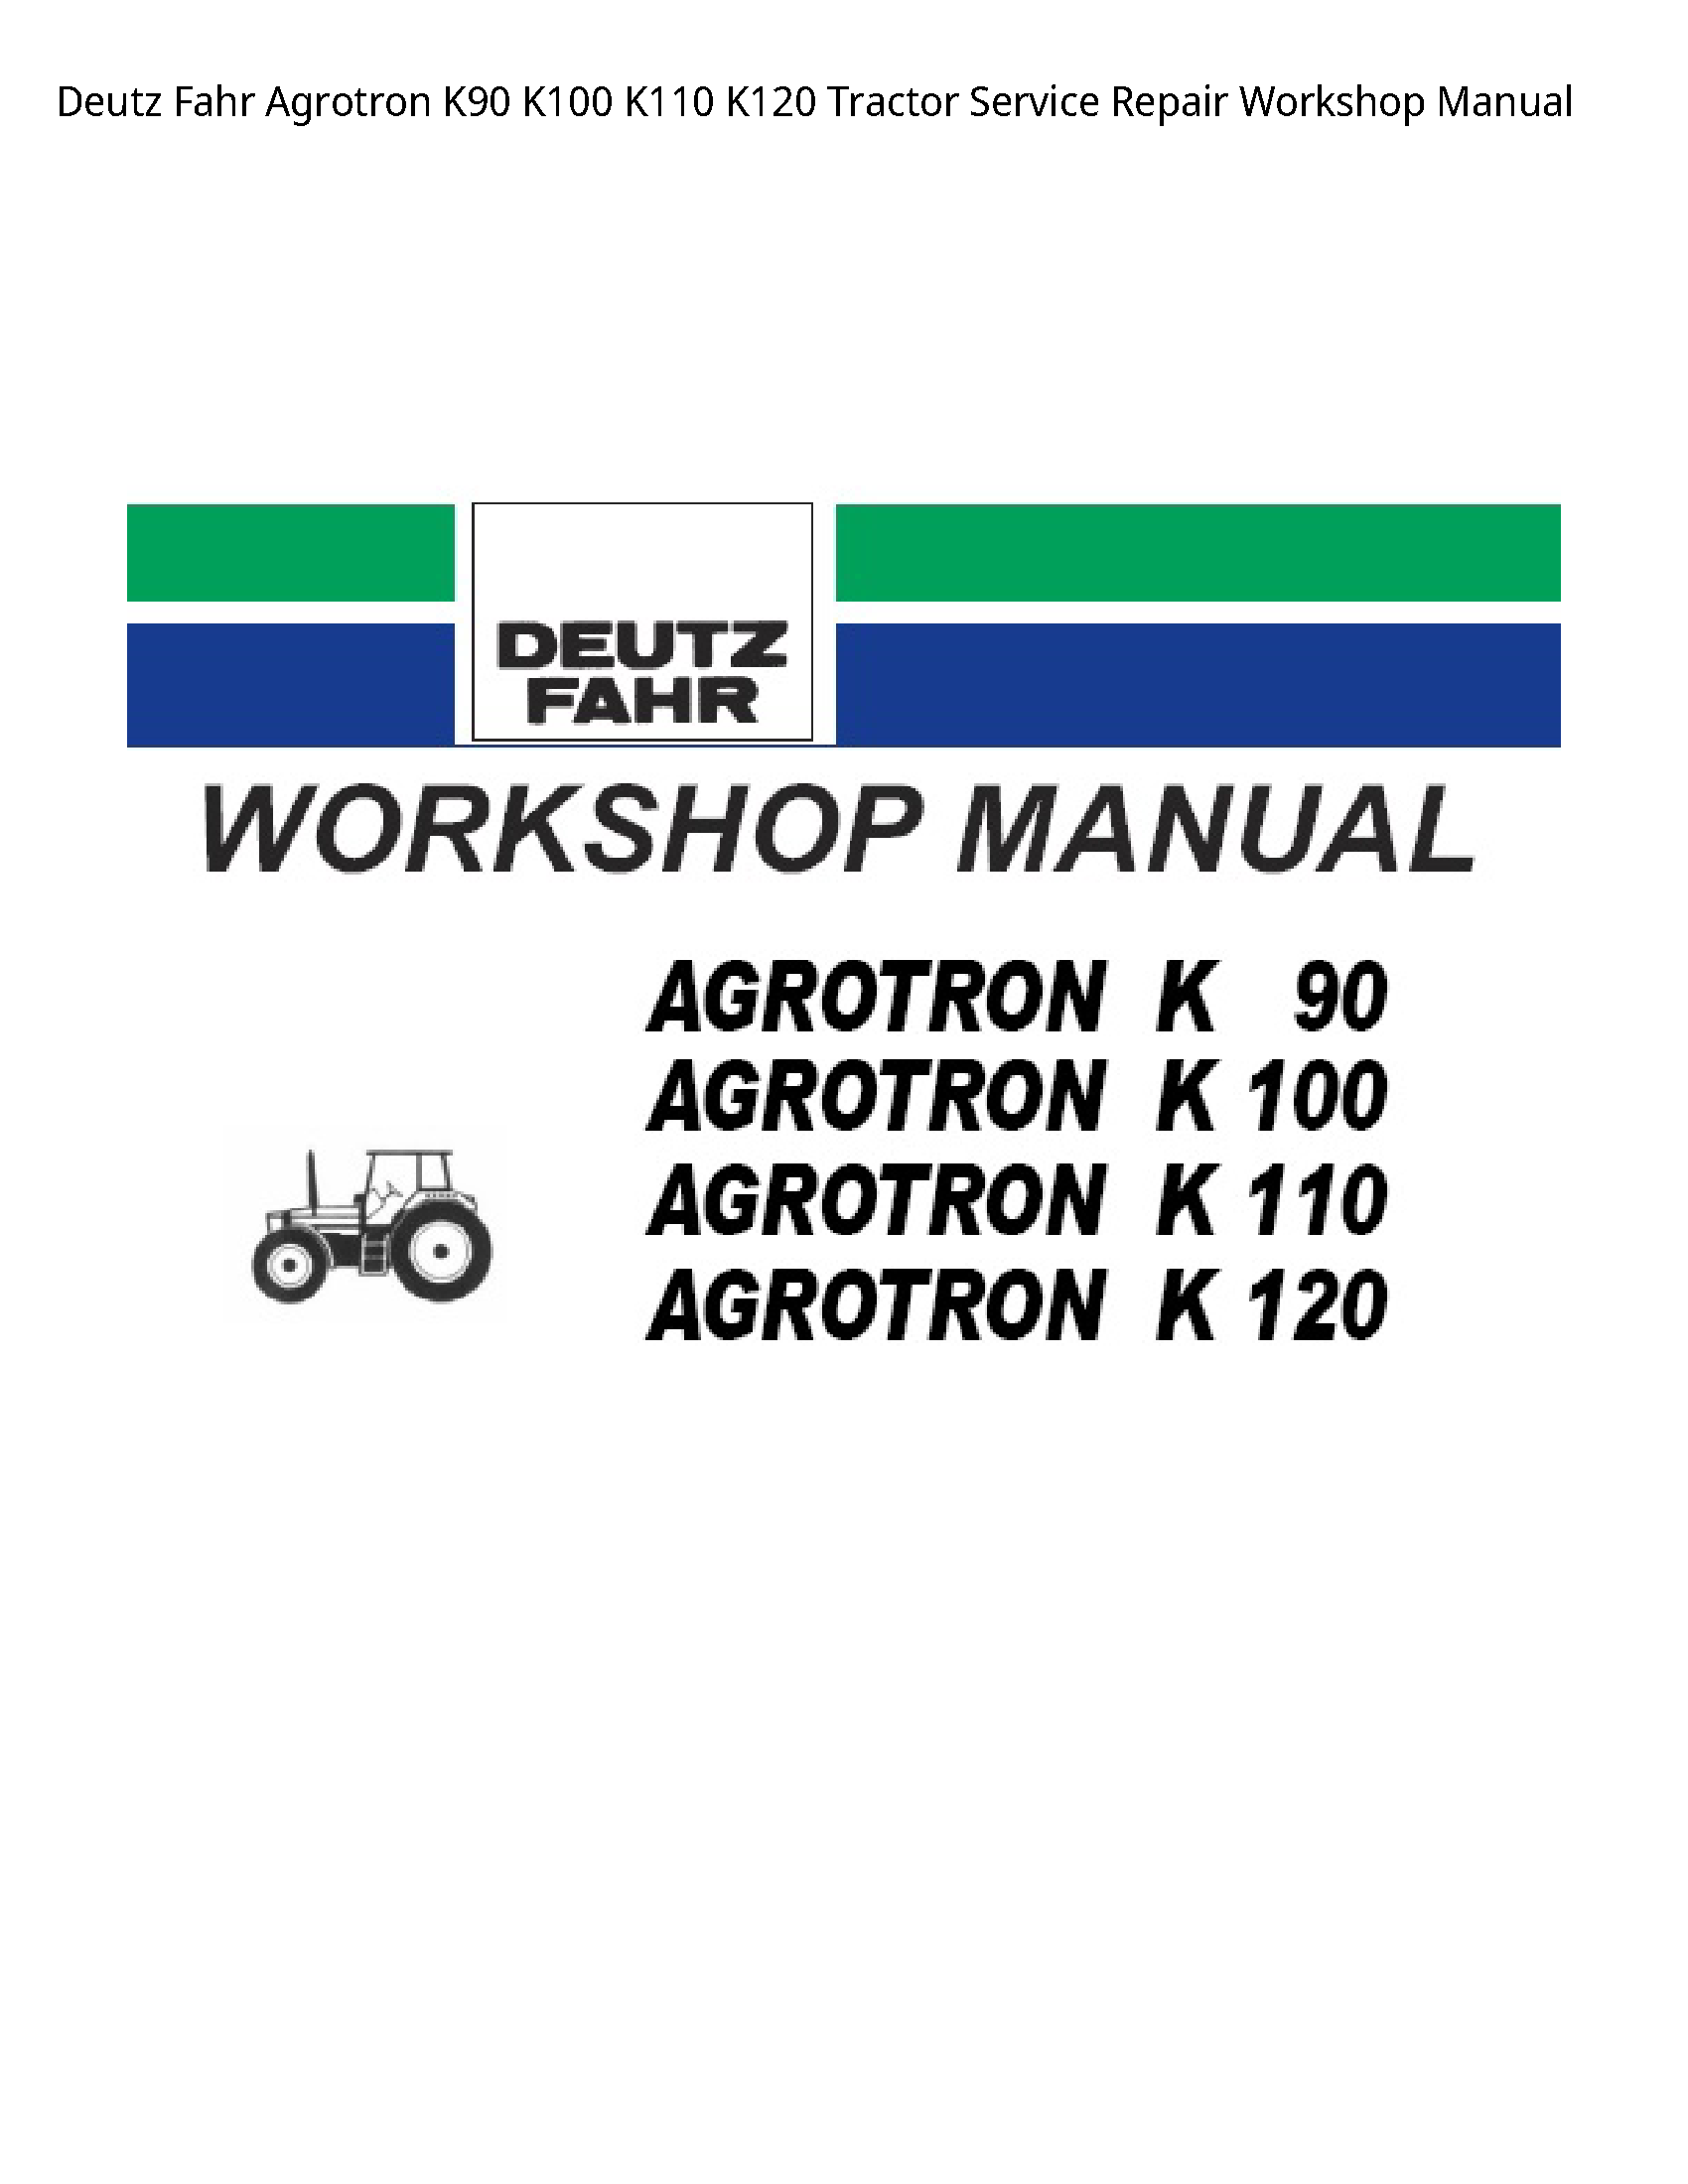 Deutz K90 Fahr Agrotron Tractor manual